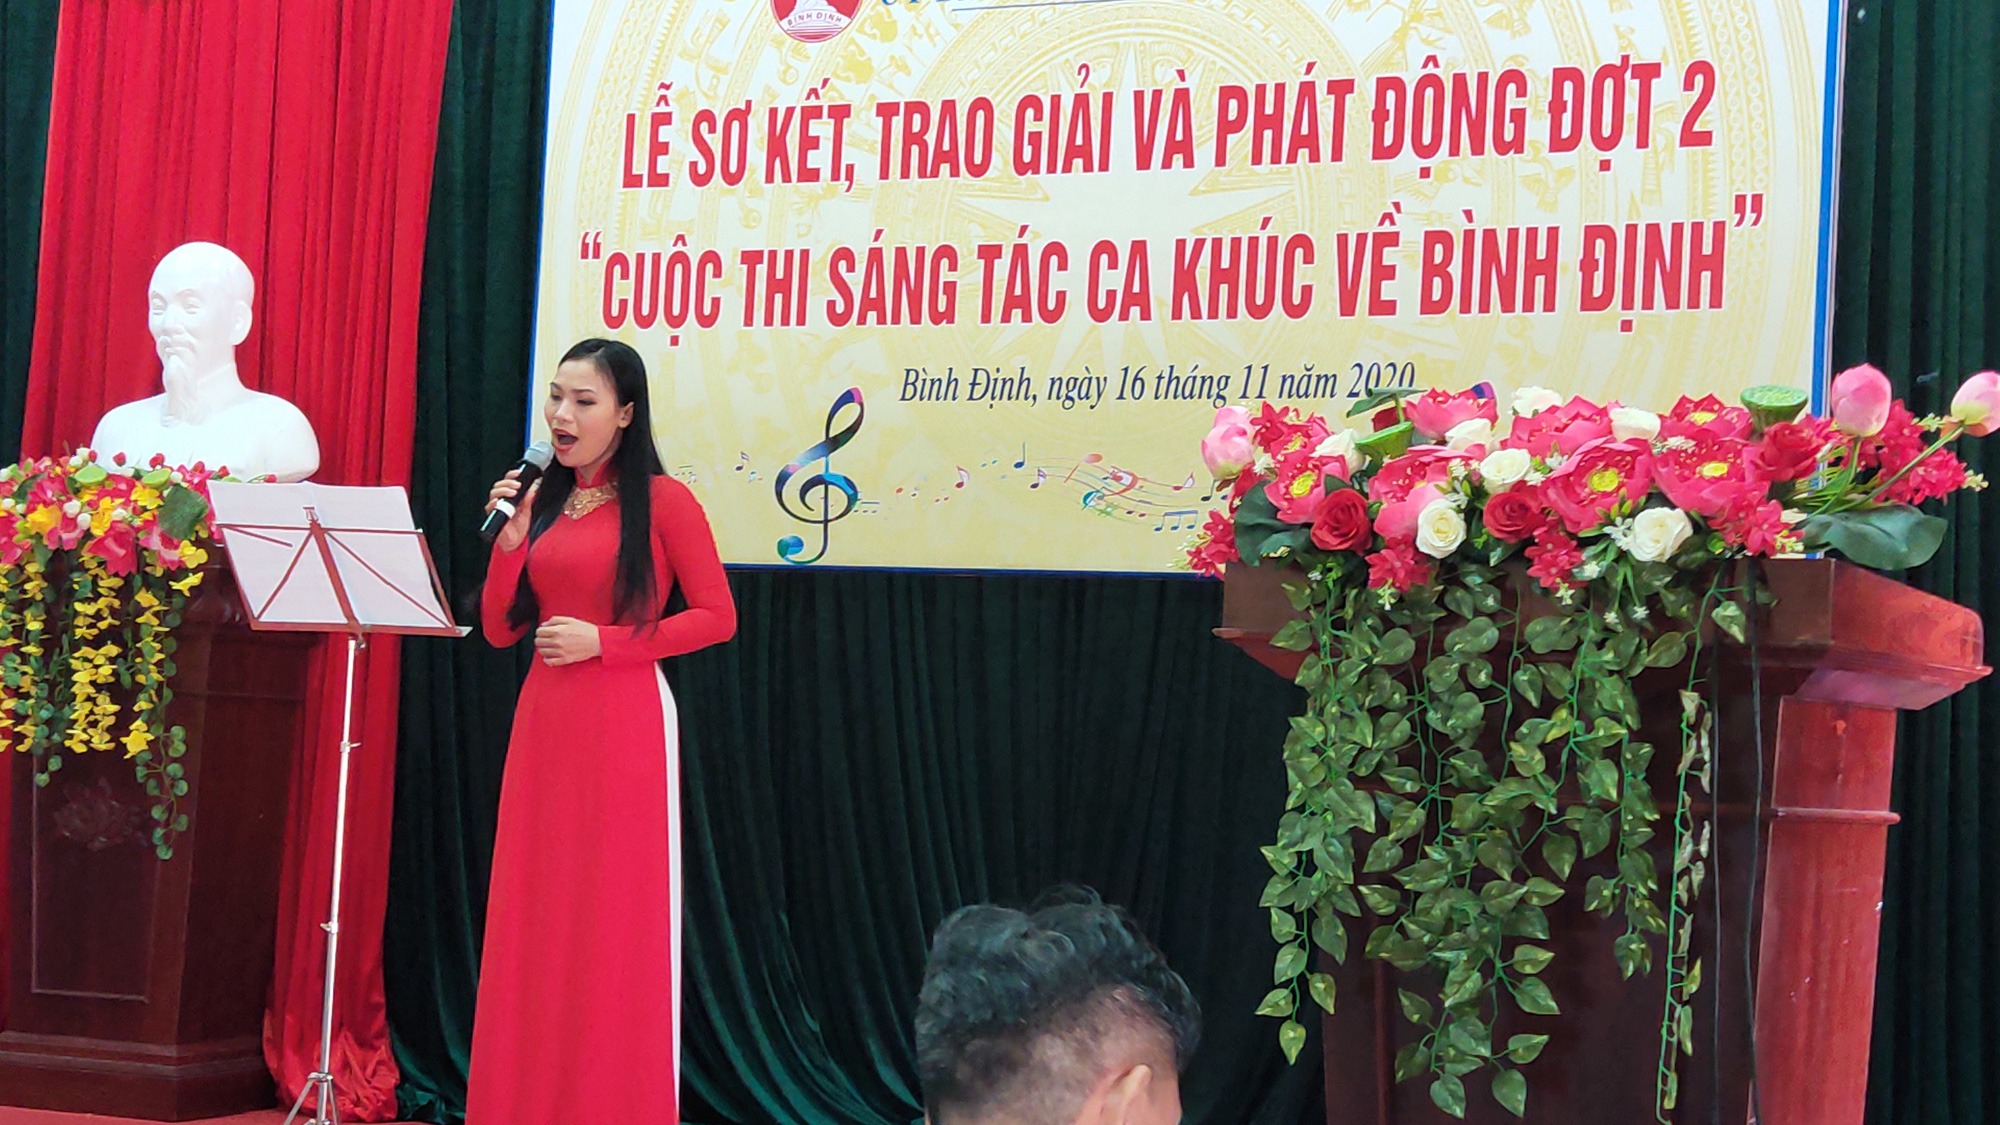 Trao giải sáng tác ca khúc về Bình Định cho các nhạc sĩ   - Ảnh 1.